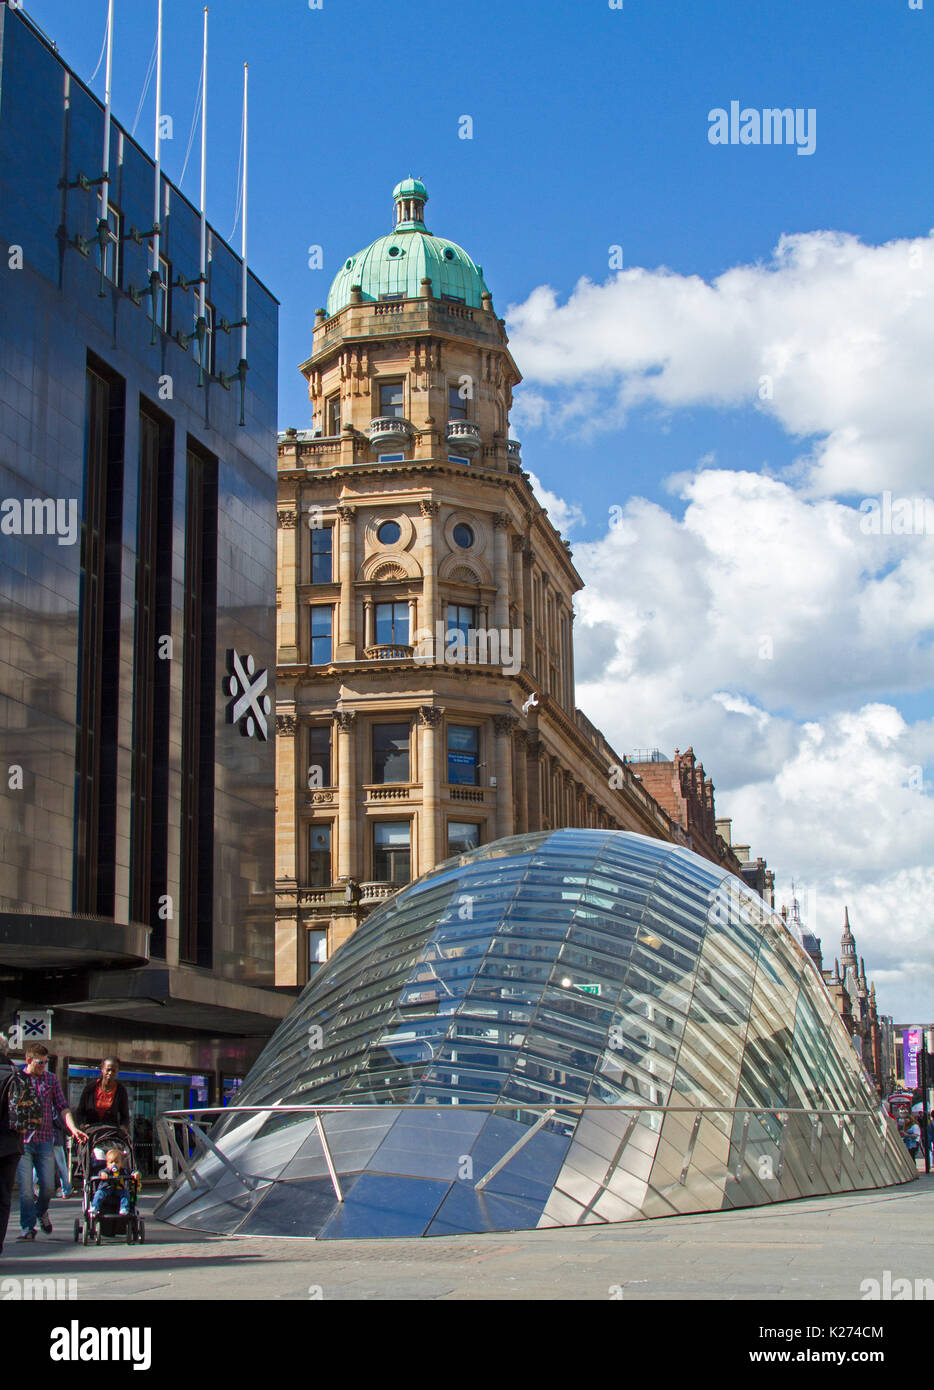 Architecture moderne - verre bombé entrée de métro St Enoch à côté de bâtiments historique élégant une époque passée à Glasgow, Ecosse Banque D'Images